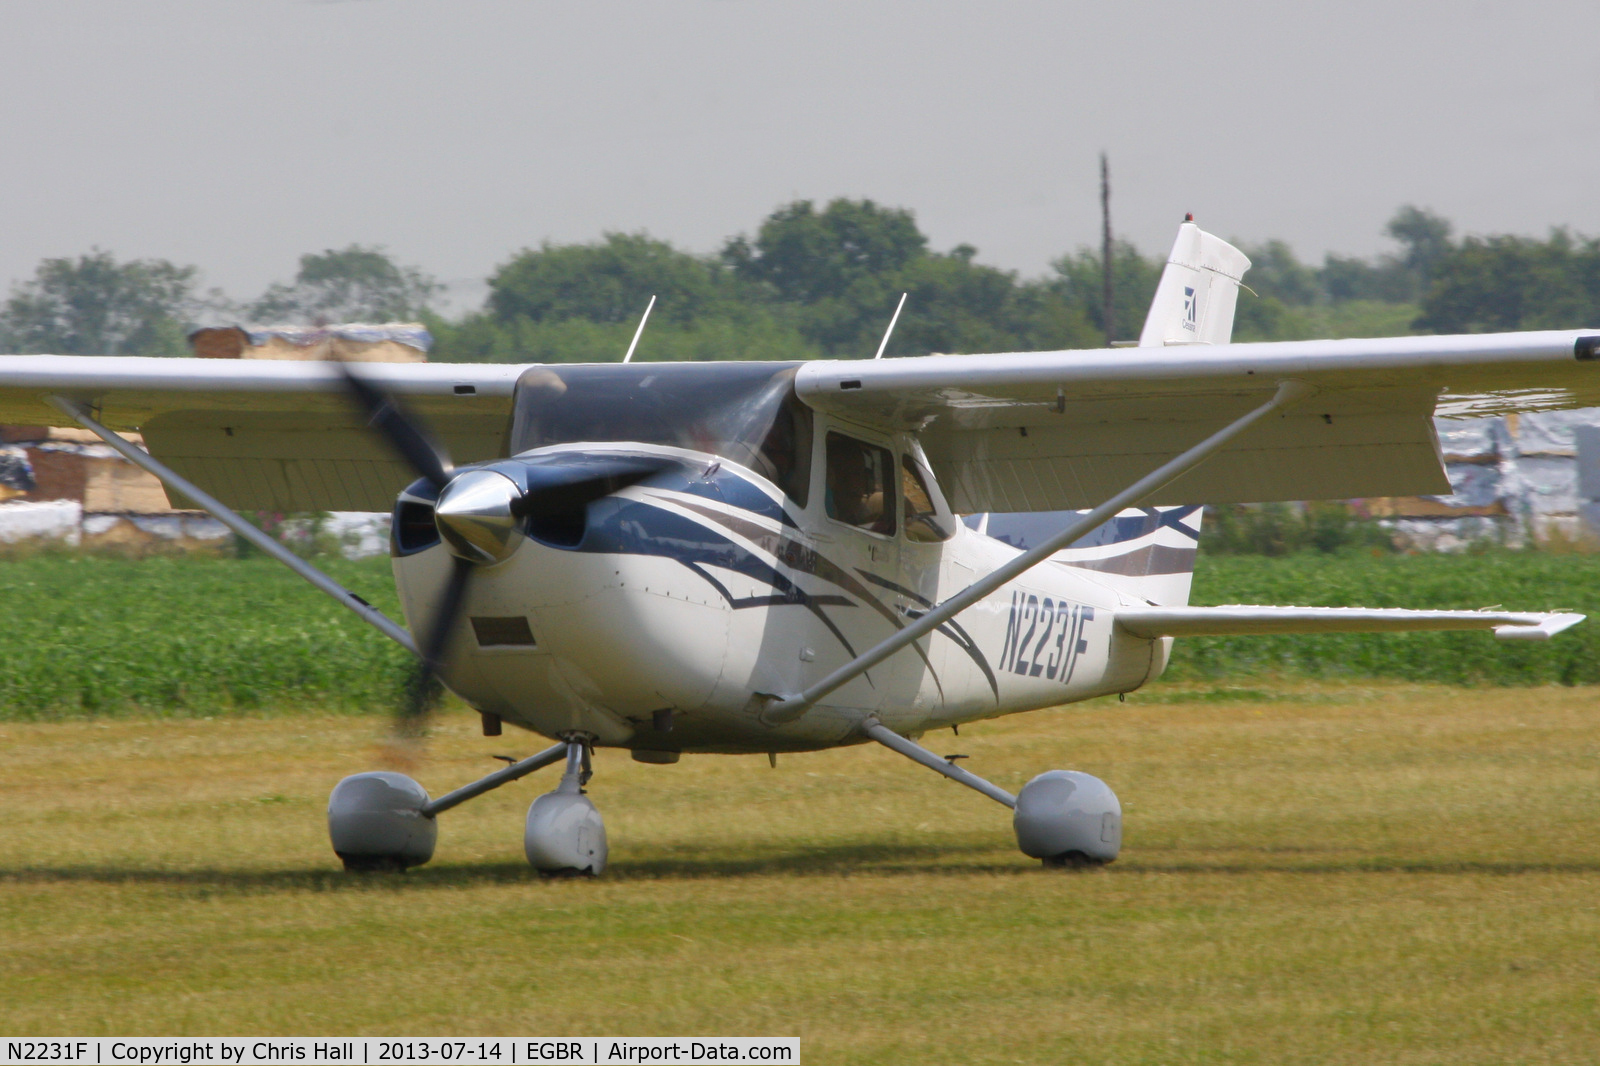 N2231F, 2007 Cessna 182T Skylane C/N 18281925, at the Real Aeroplane Club's Wings & Wheels fly-in, Breighton